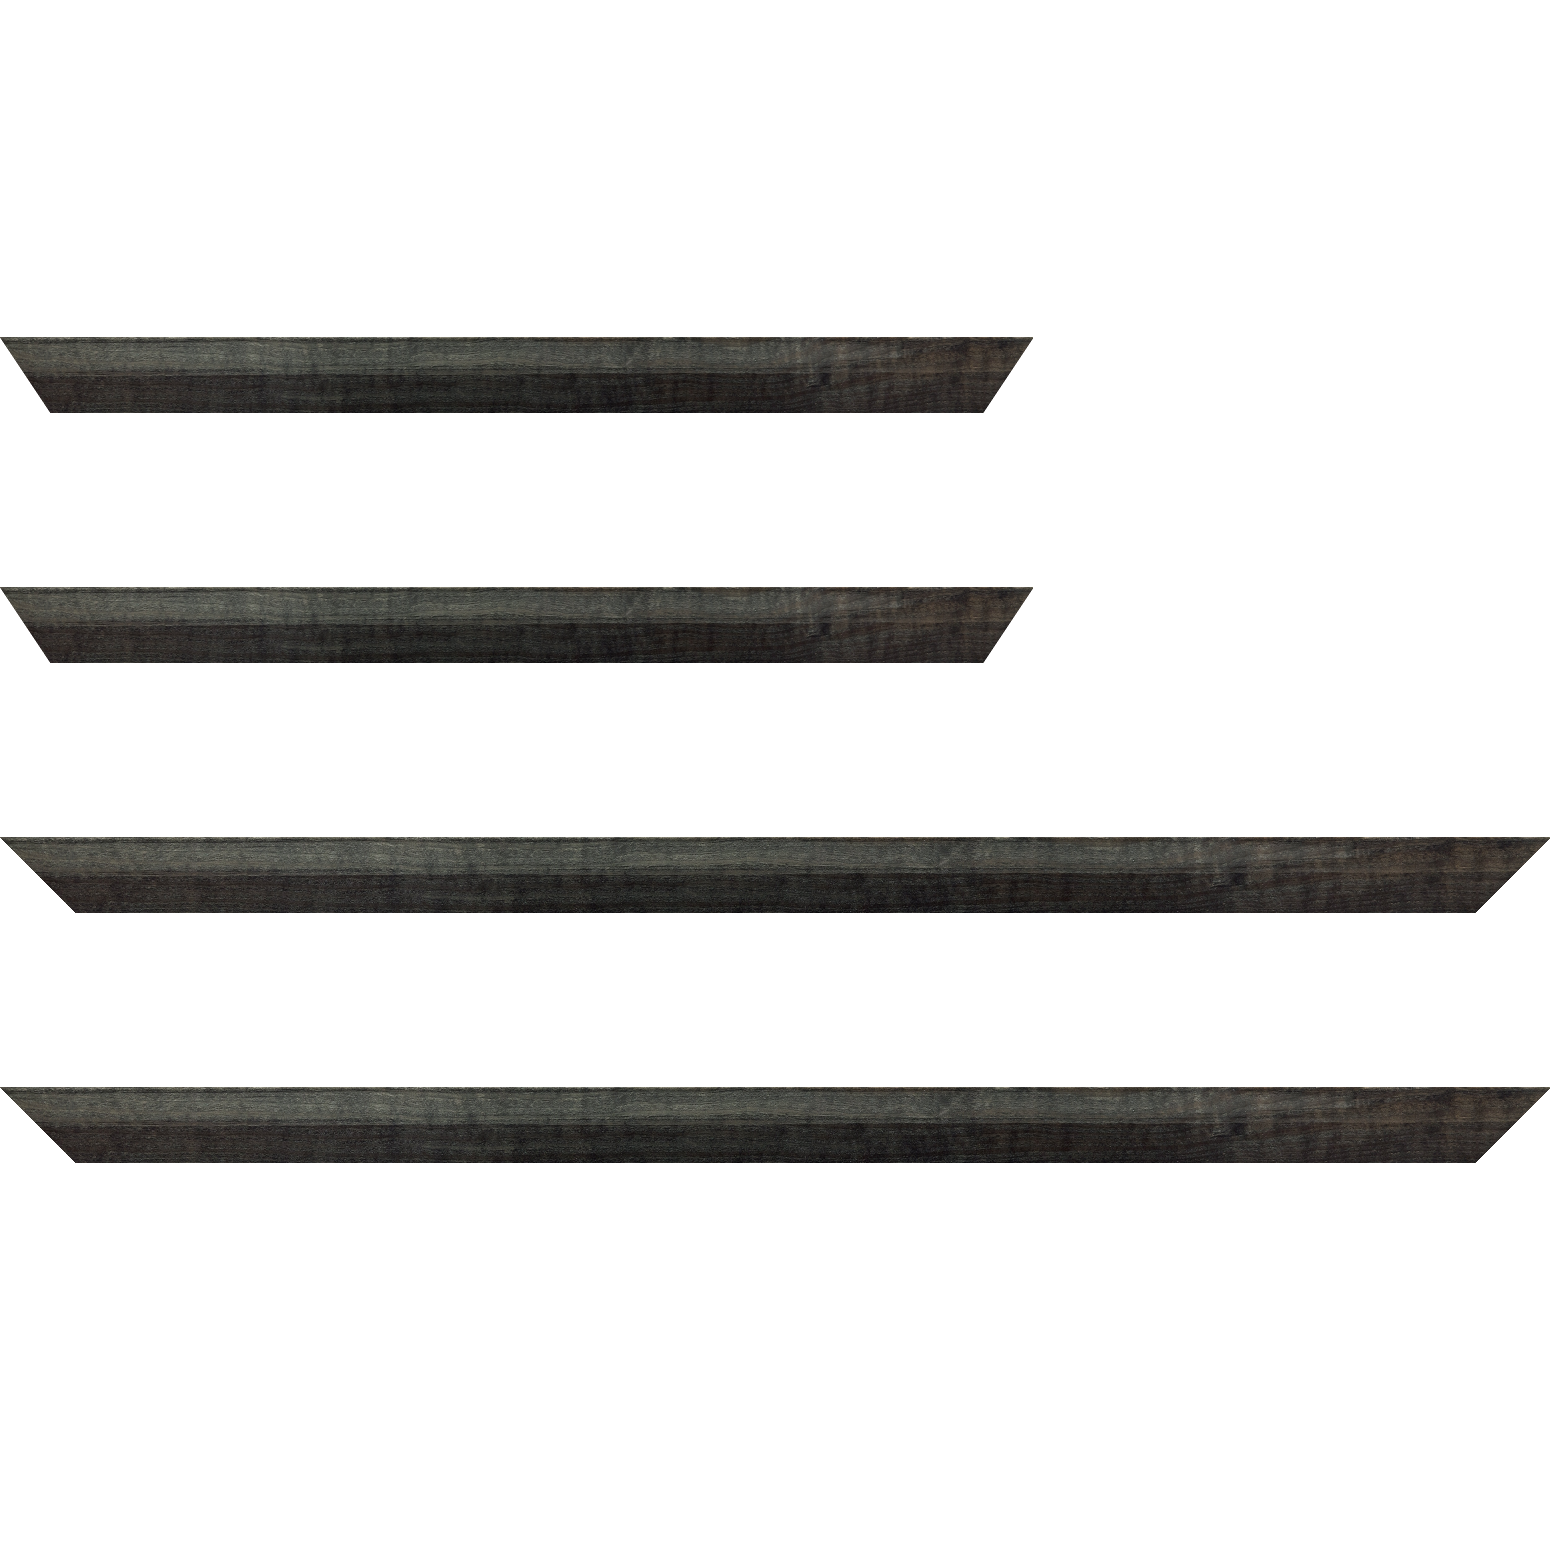 Baguette bois profil arrondi en pente plongeant largeur 2.4cm couleur  gris foncé anthracite finition vernis brillant,veine du bois  apparent (pin) , - 59.4x84.1